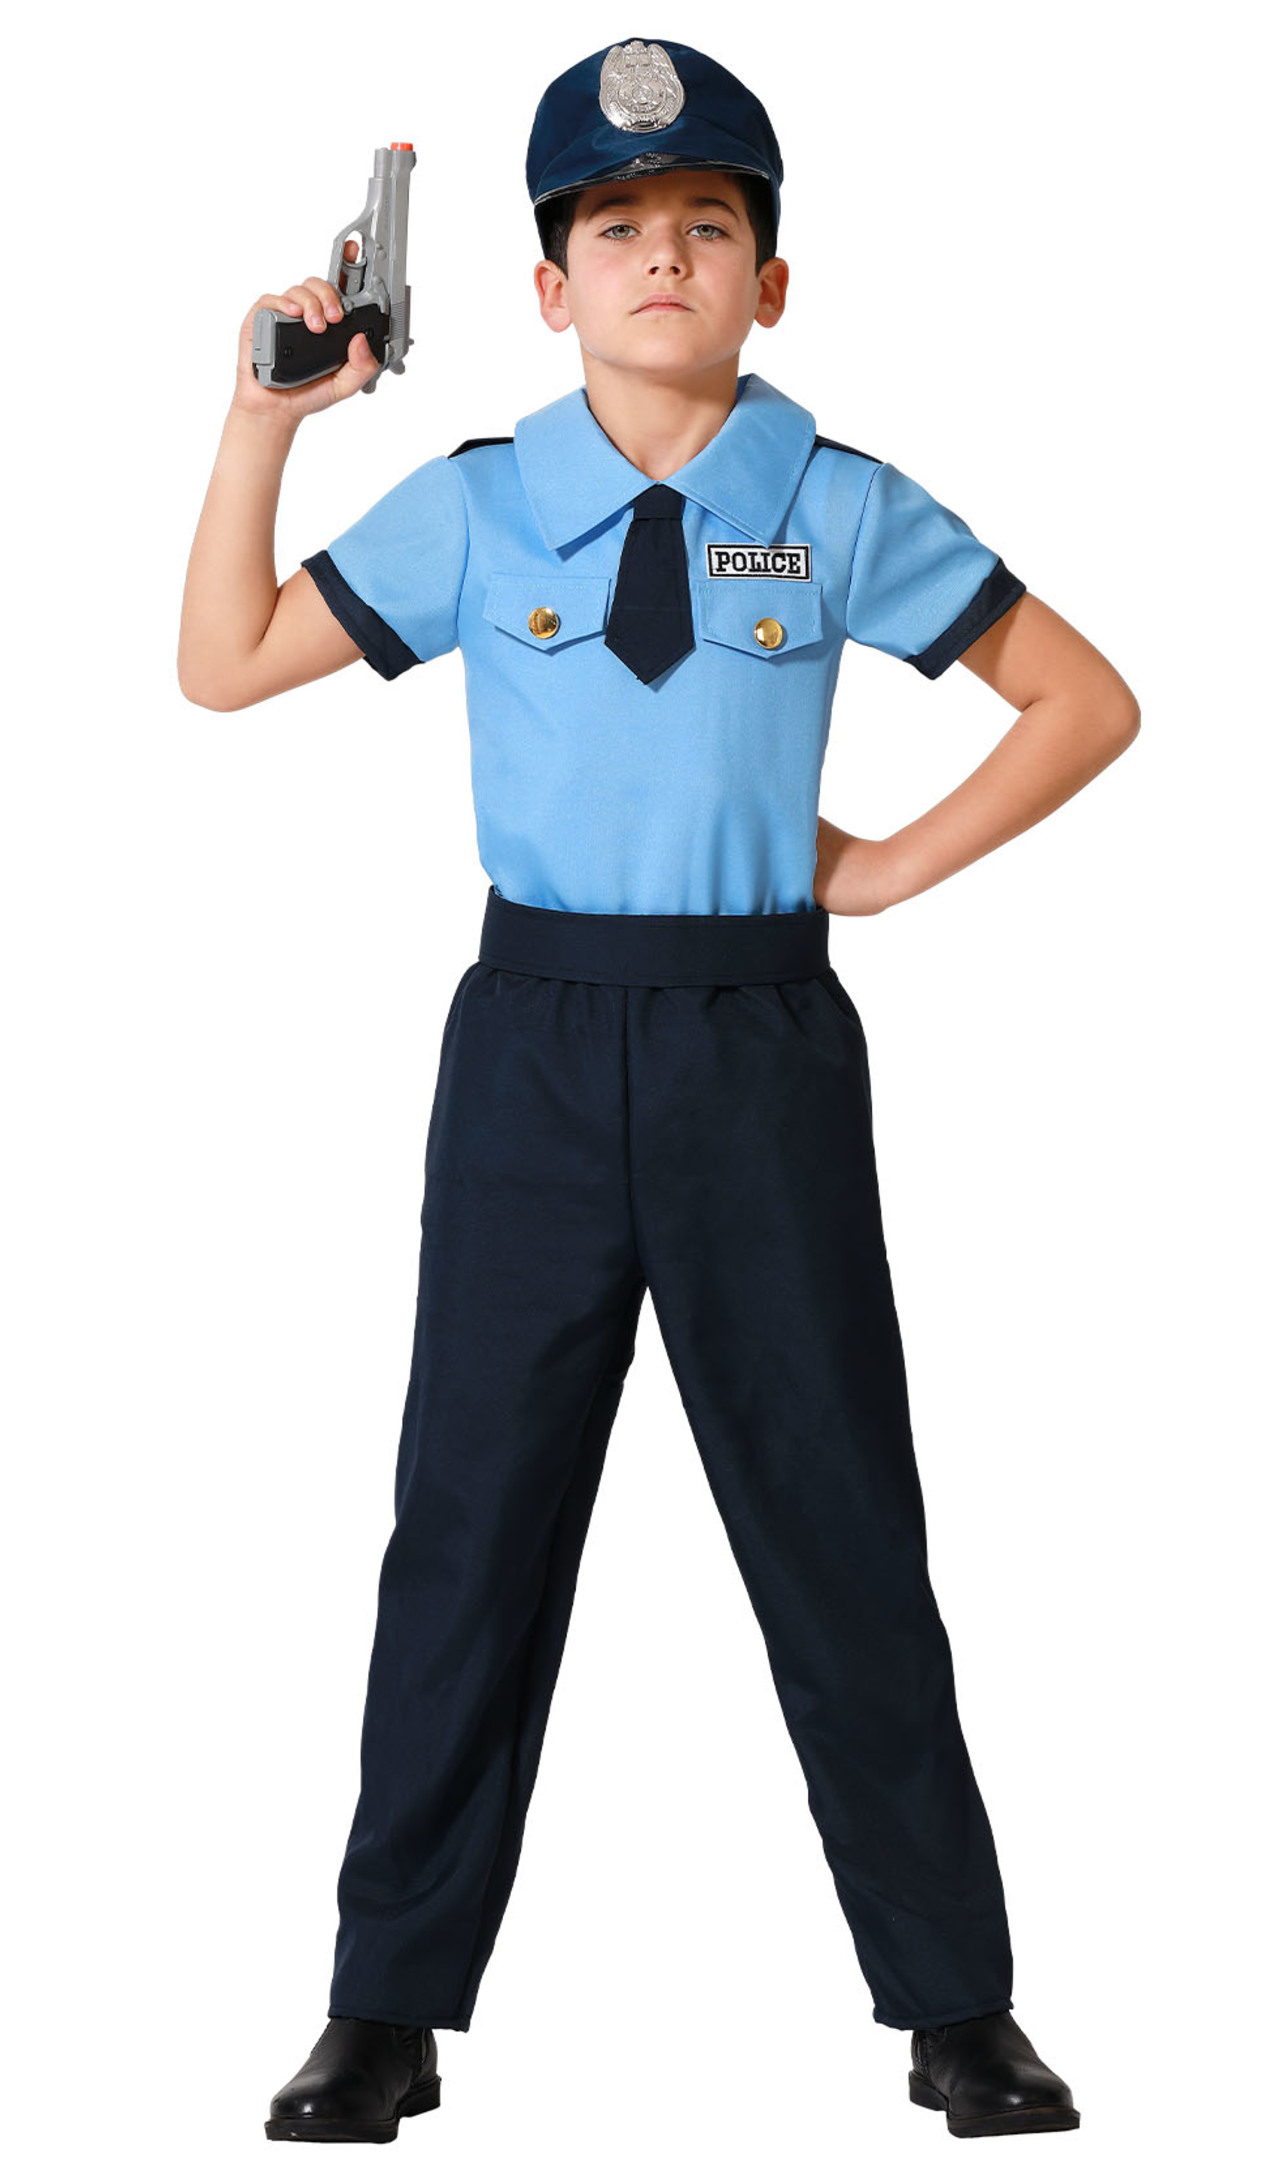 Disfraz de Policía Básico para niño